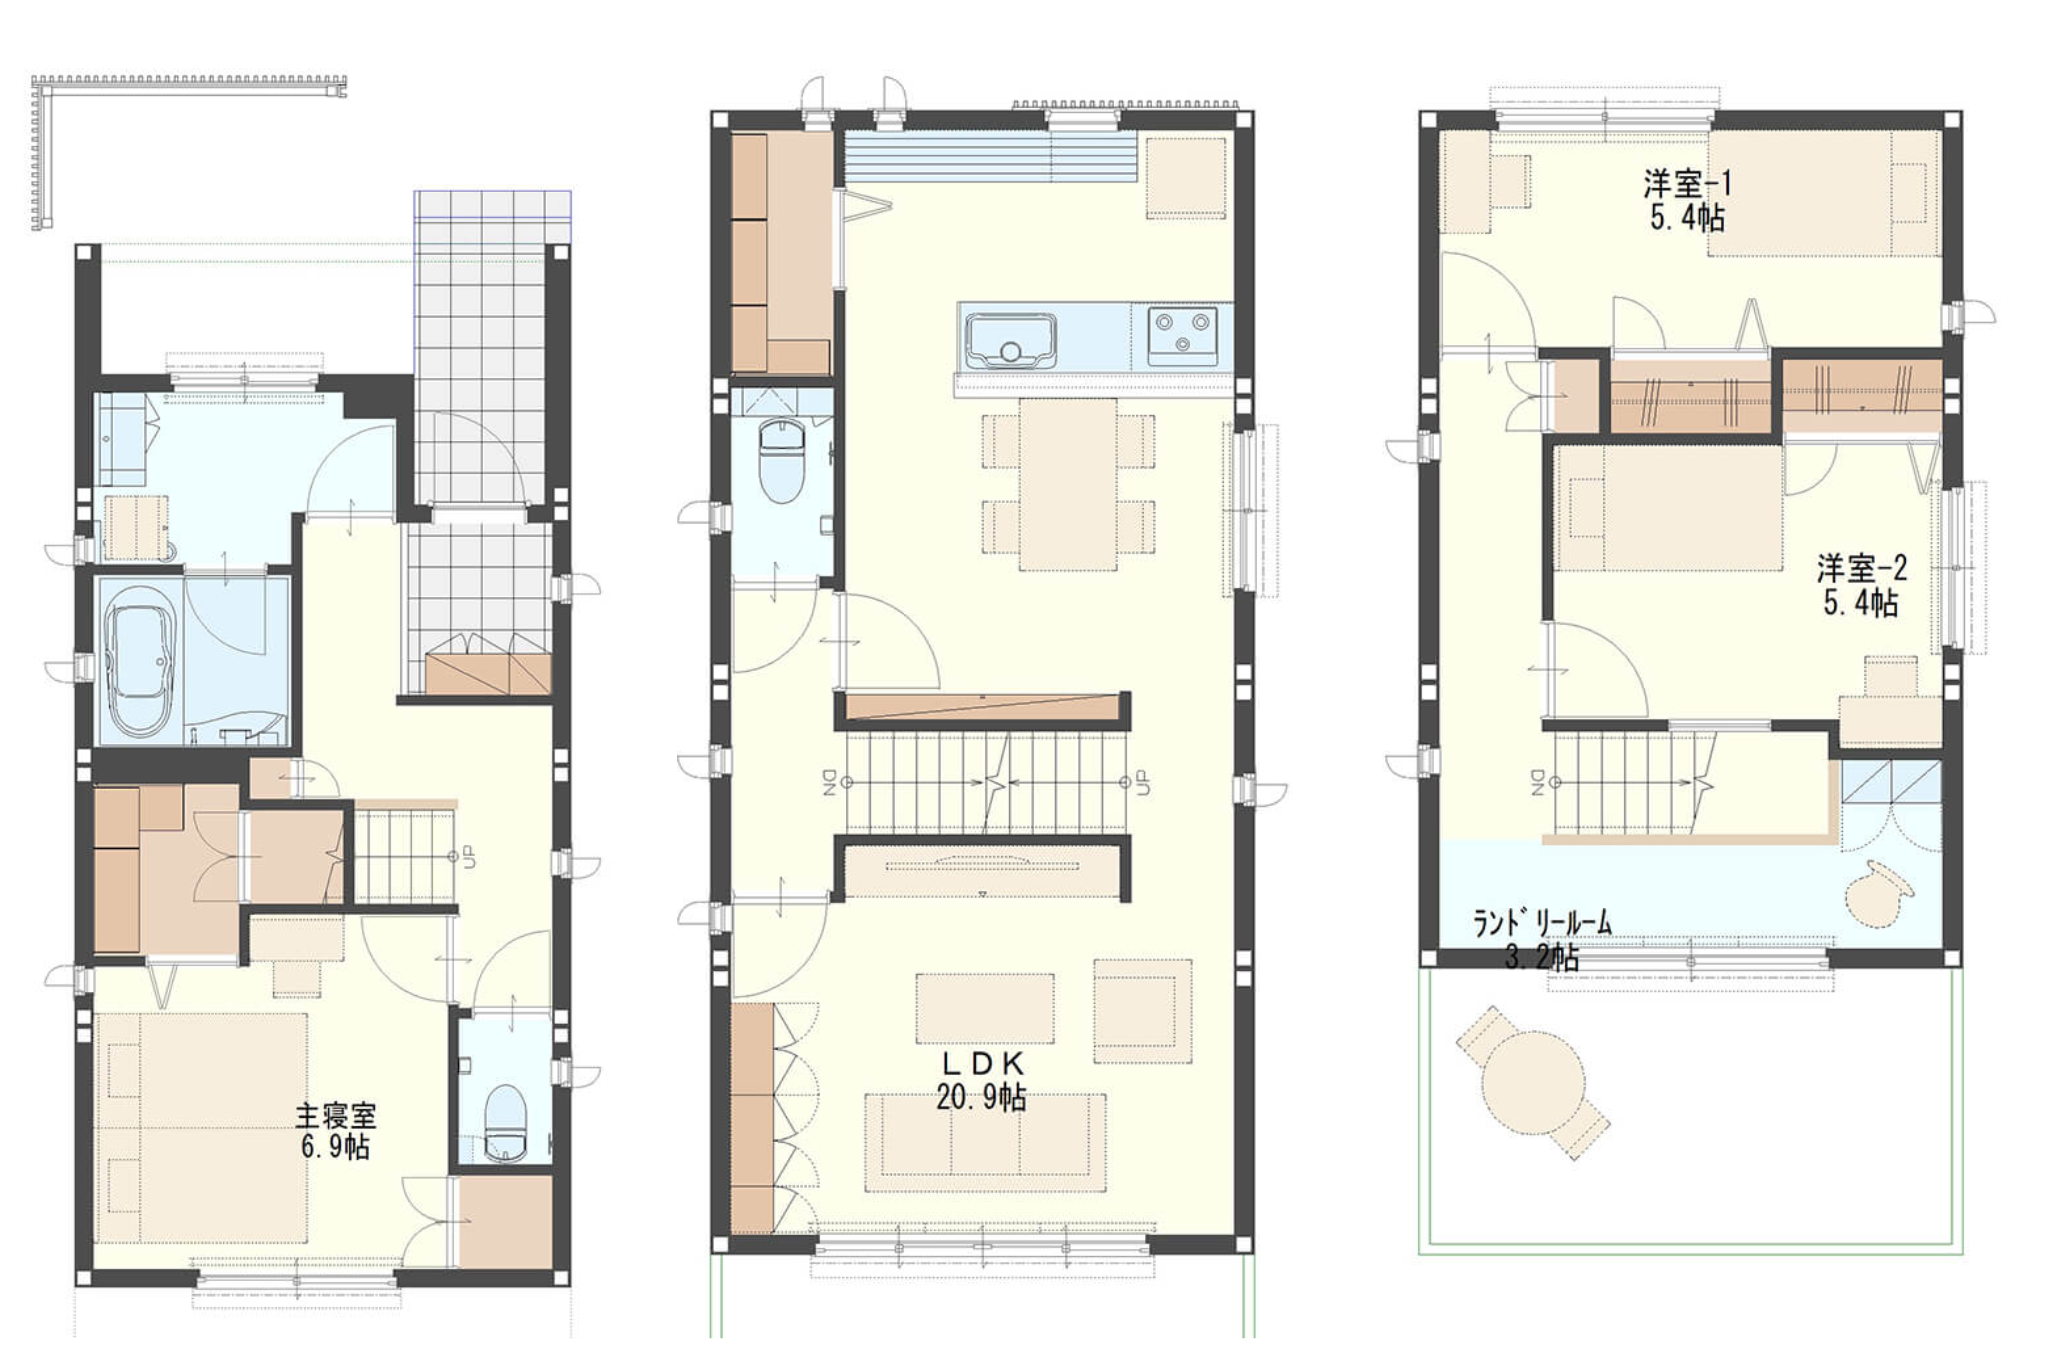 【37.3坪】スペースを有効活用した狭小住宅の間取り図